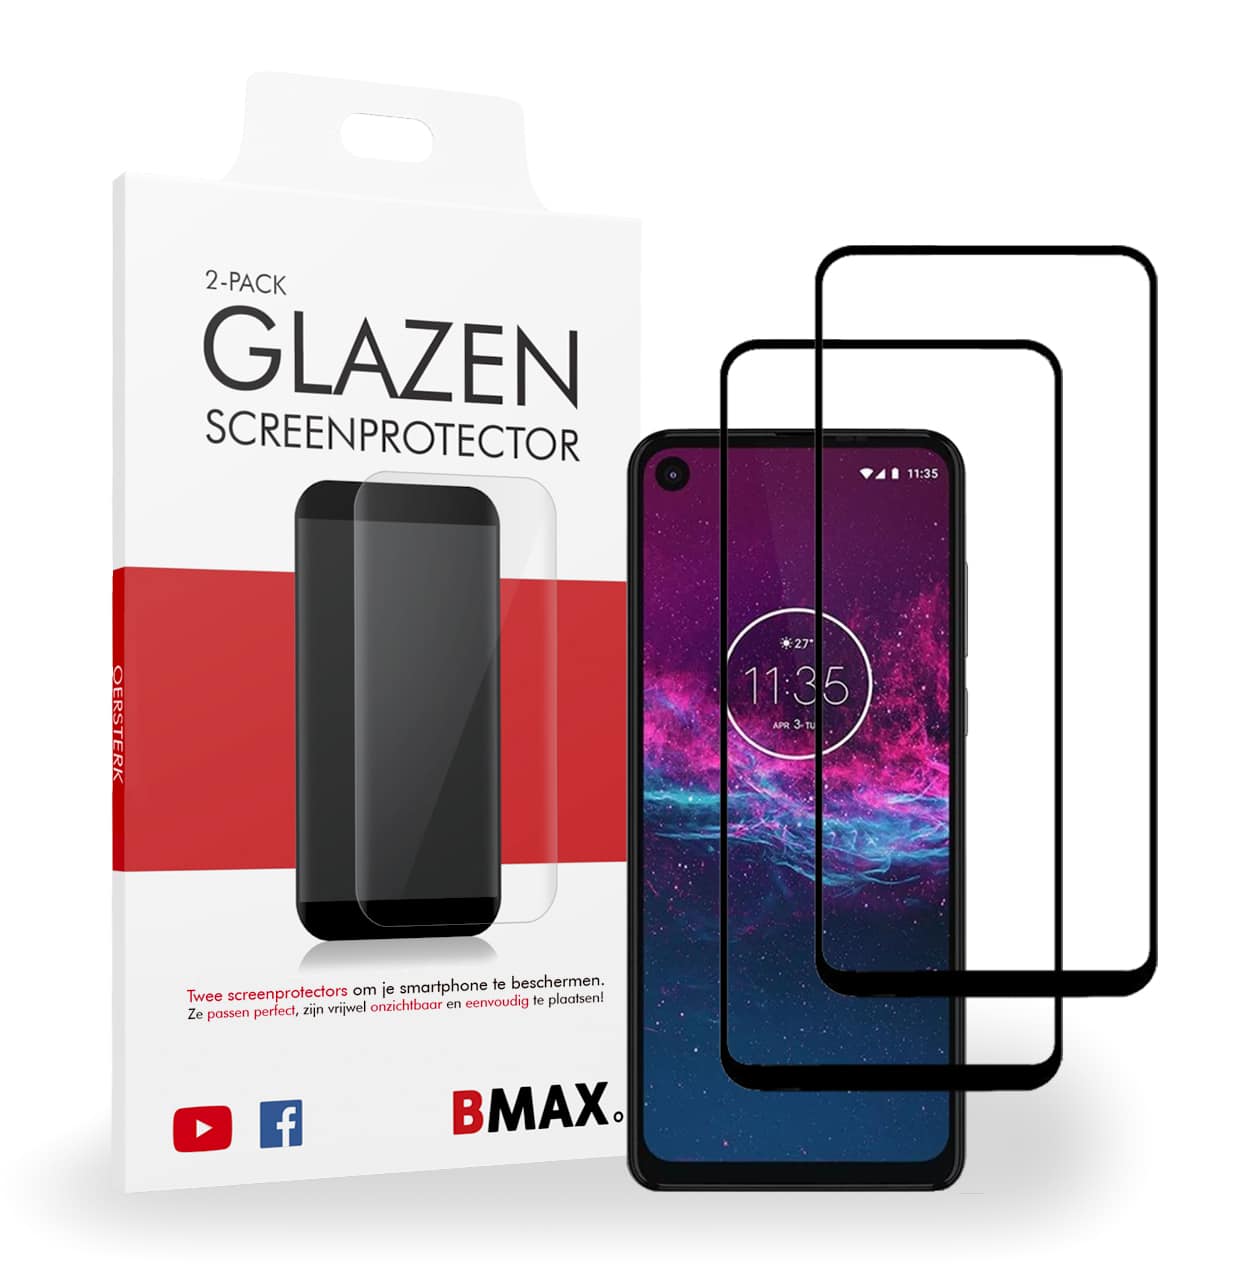 medeklinker circulatie Grens Screenprotector Motorola Moto One Action van BMAX kopen?